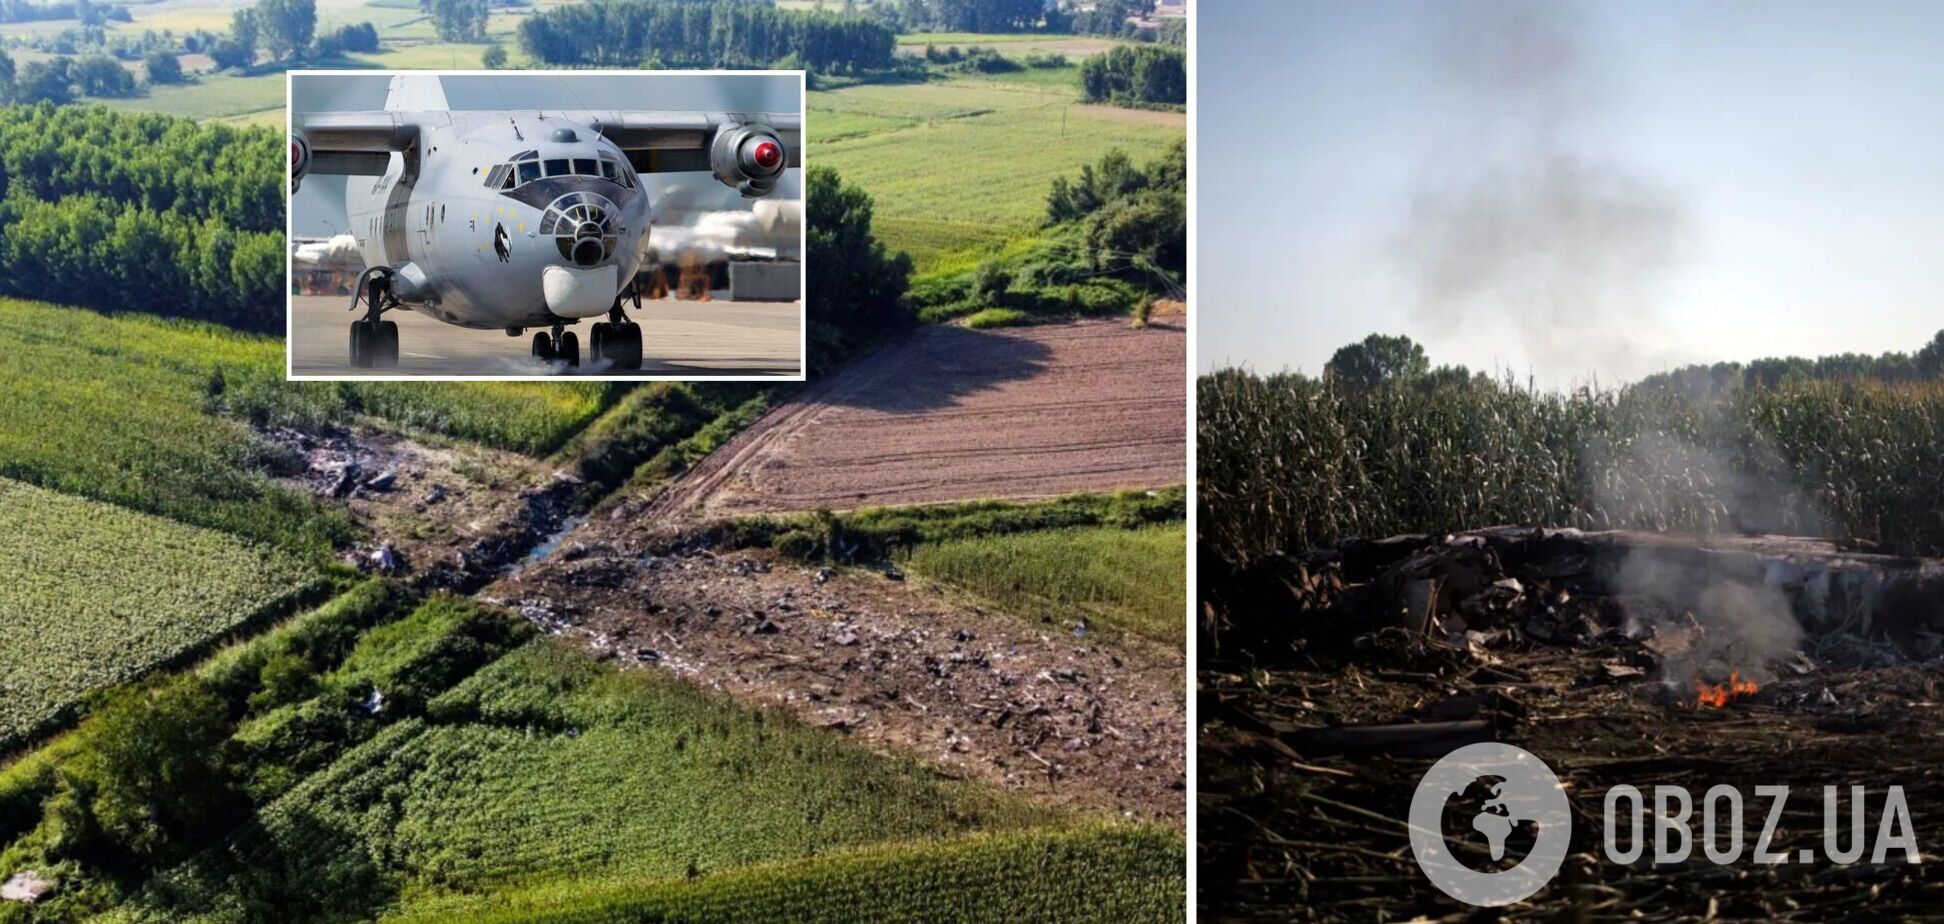 В Греции обнаружили тела всех членов экипажа на месте падения украинского самолета Ан-12